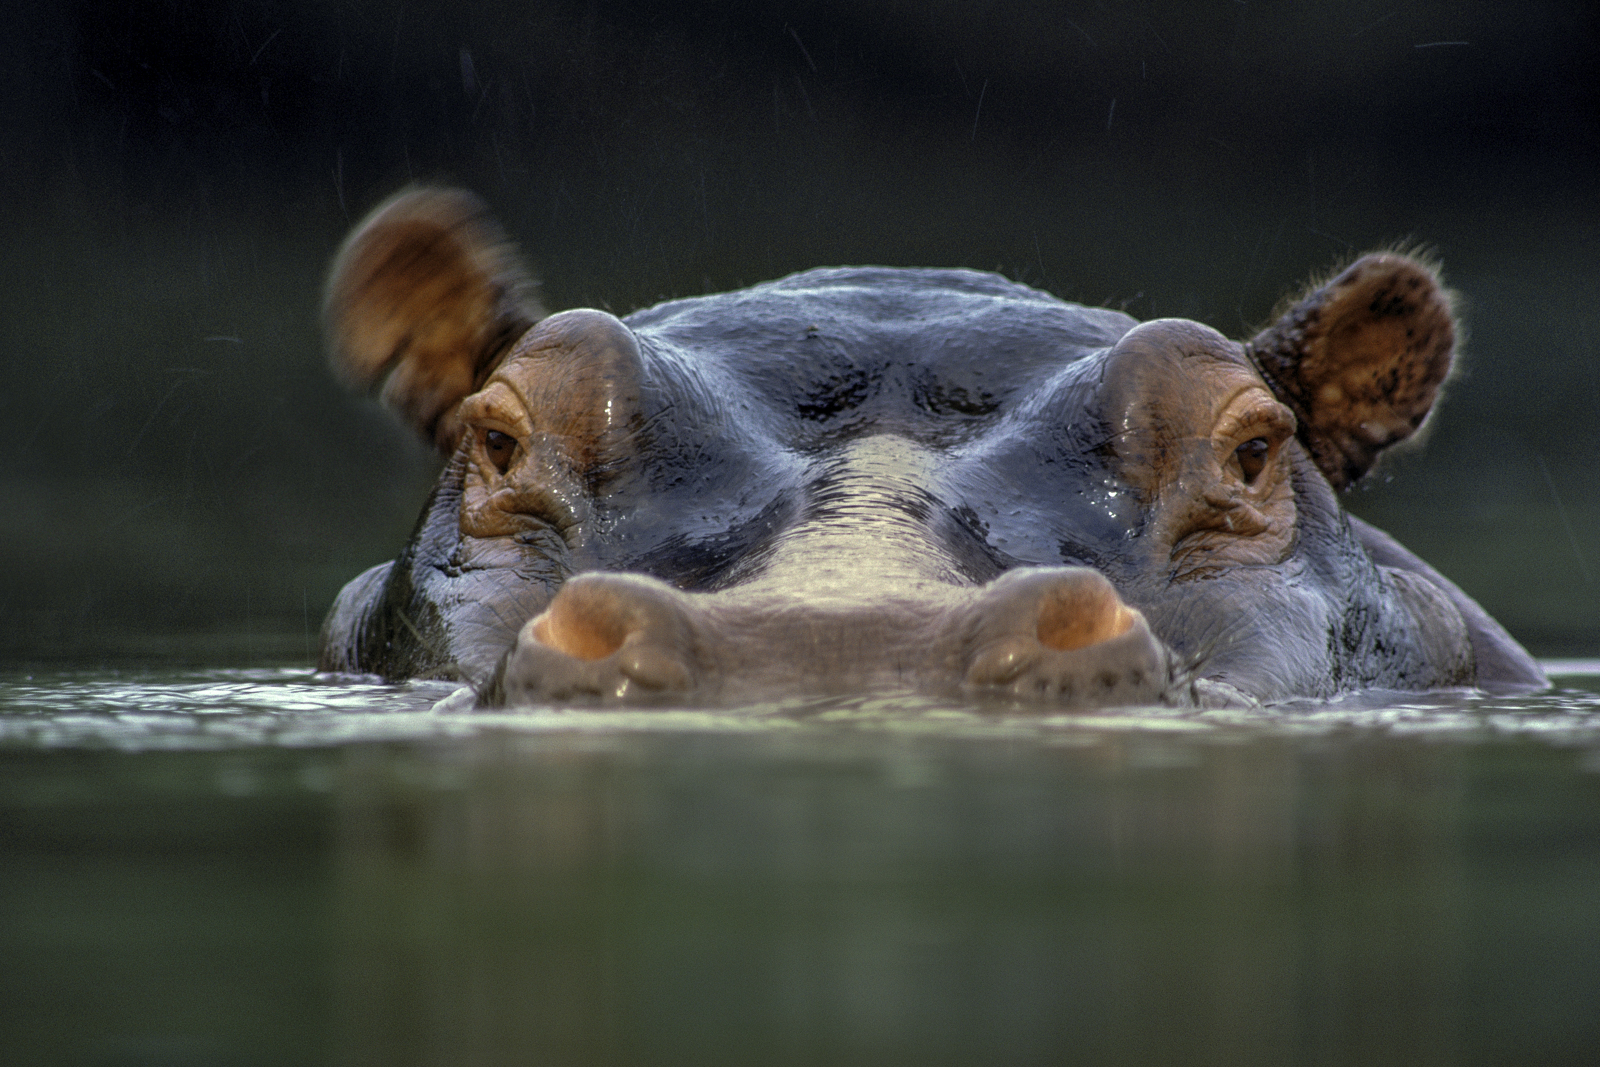 Hippopotamus surfacing, Garamba National Park, Congo (DRC)